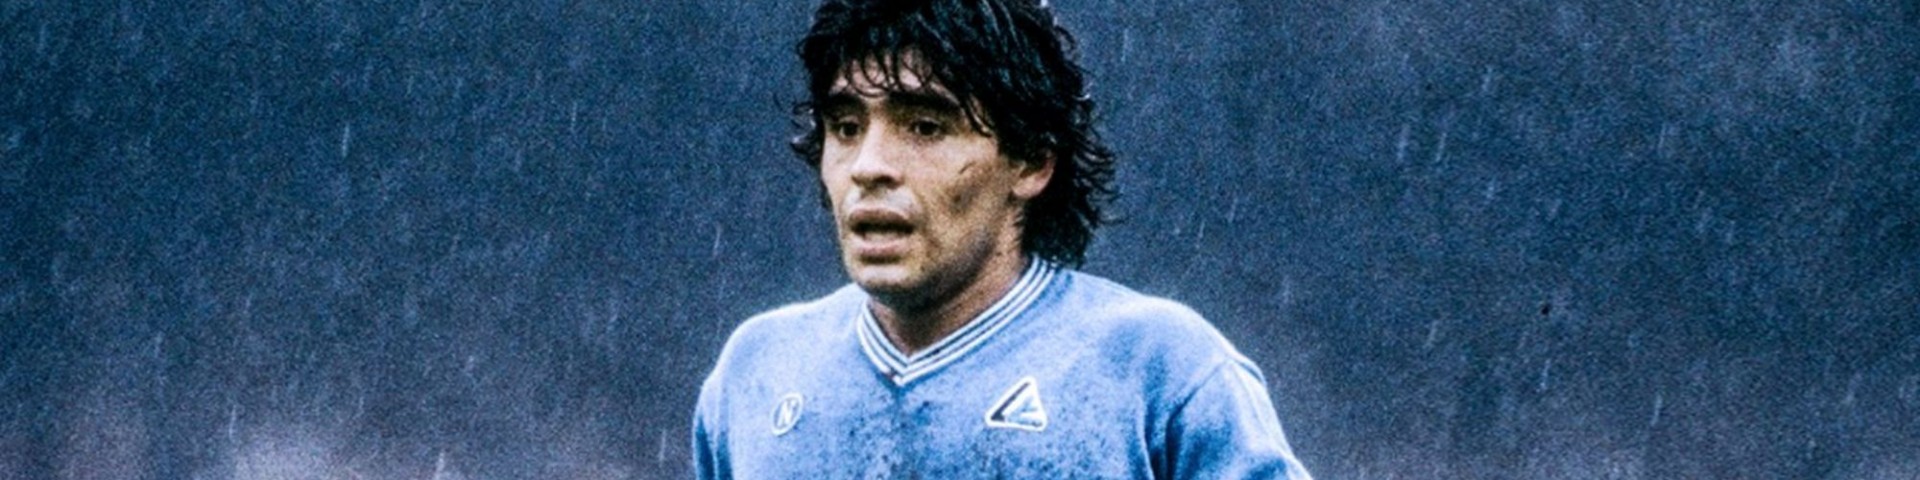 È morto Maradona: lutto nel mondo del calcio